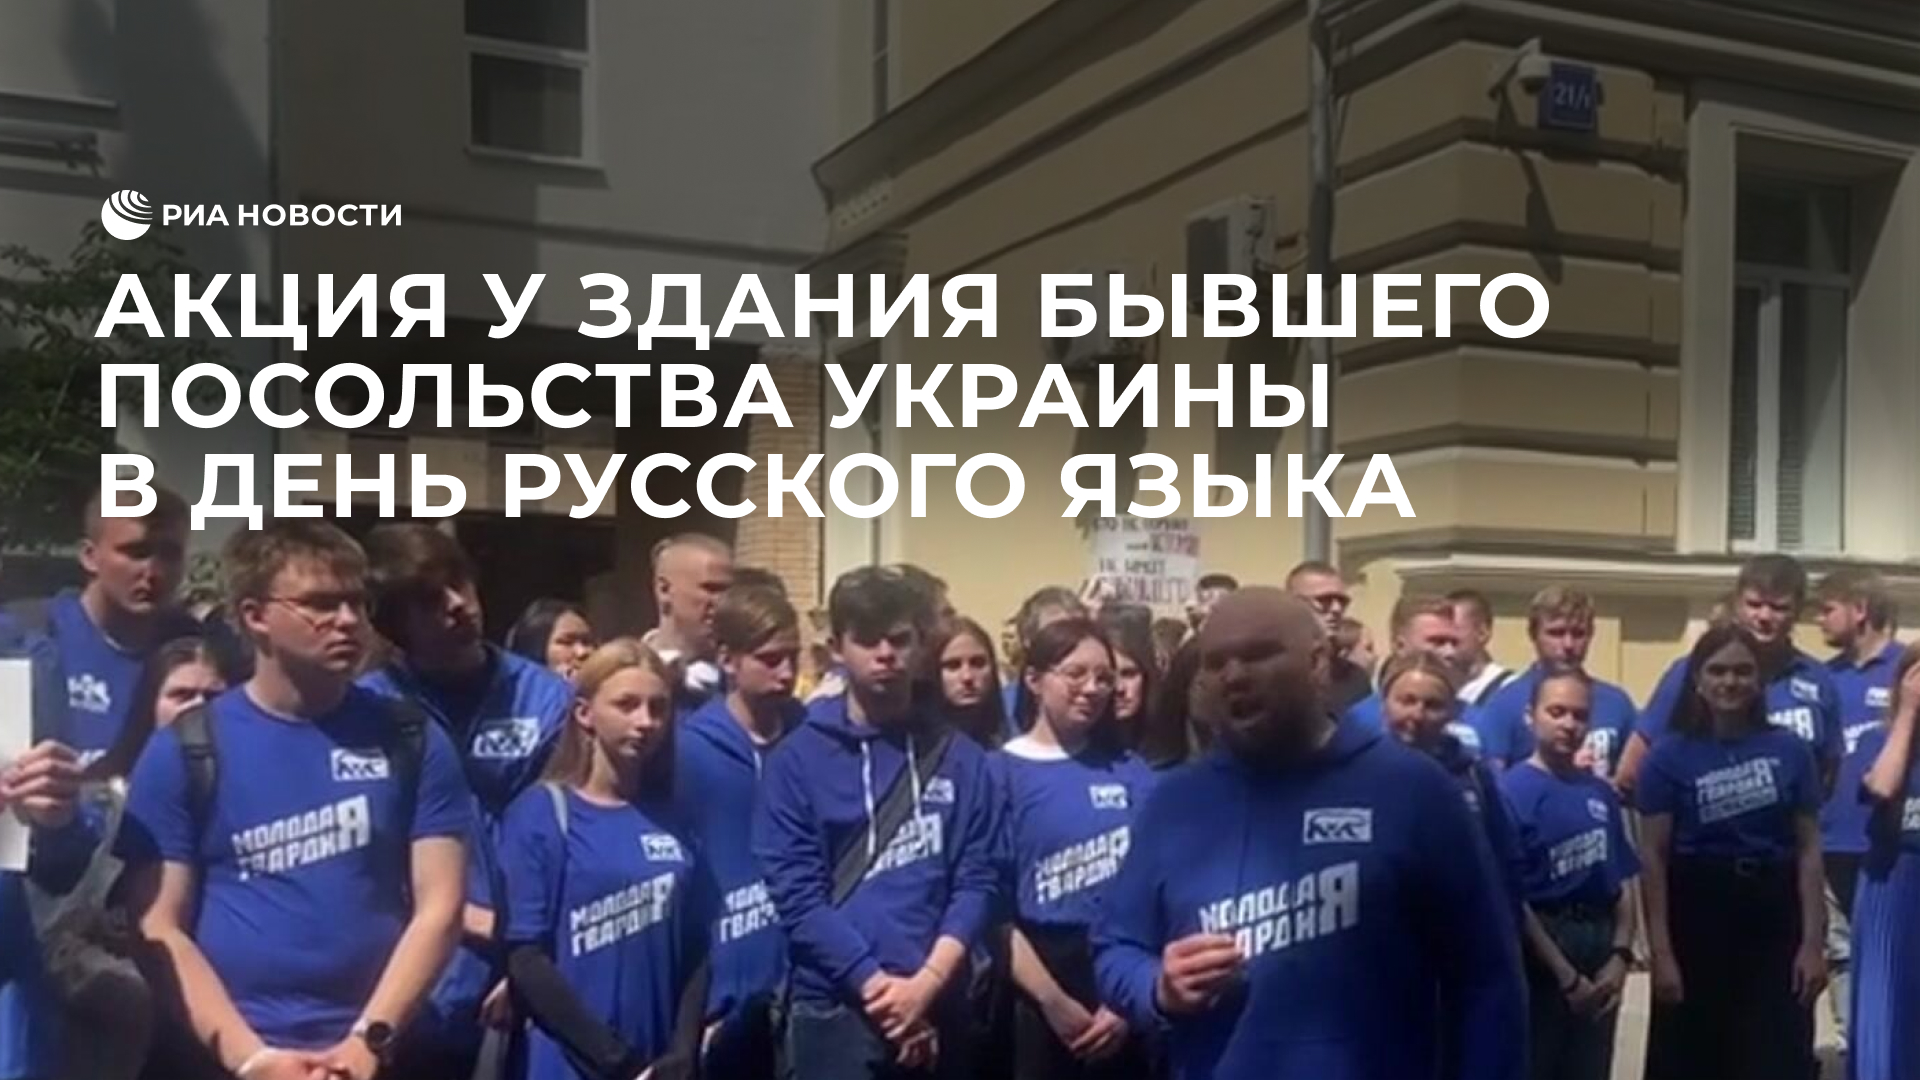 Акция у здания бывшего посольства Украины в День русского языка